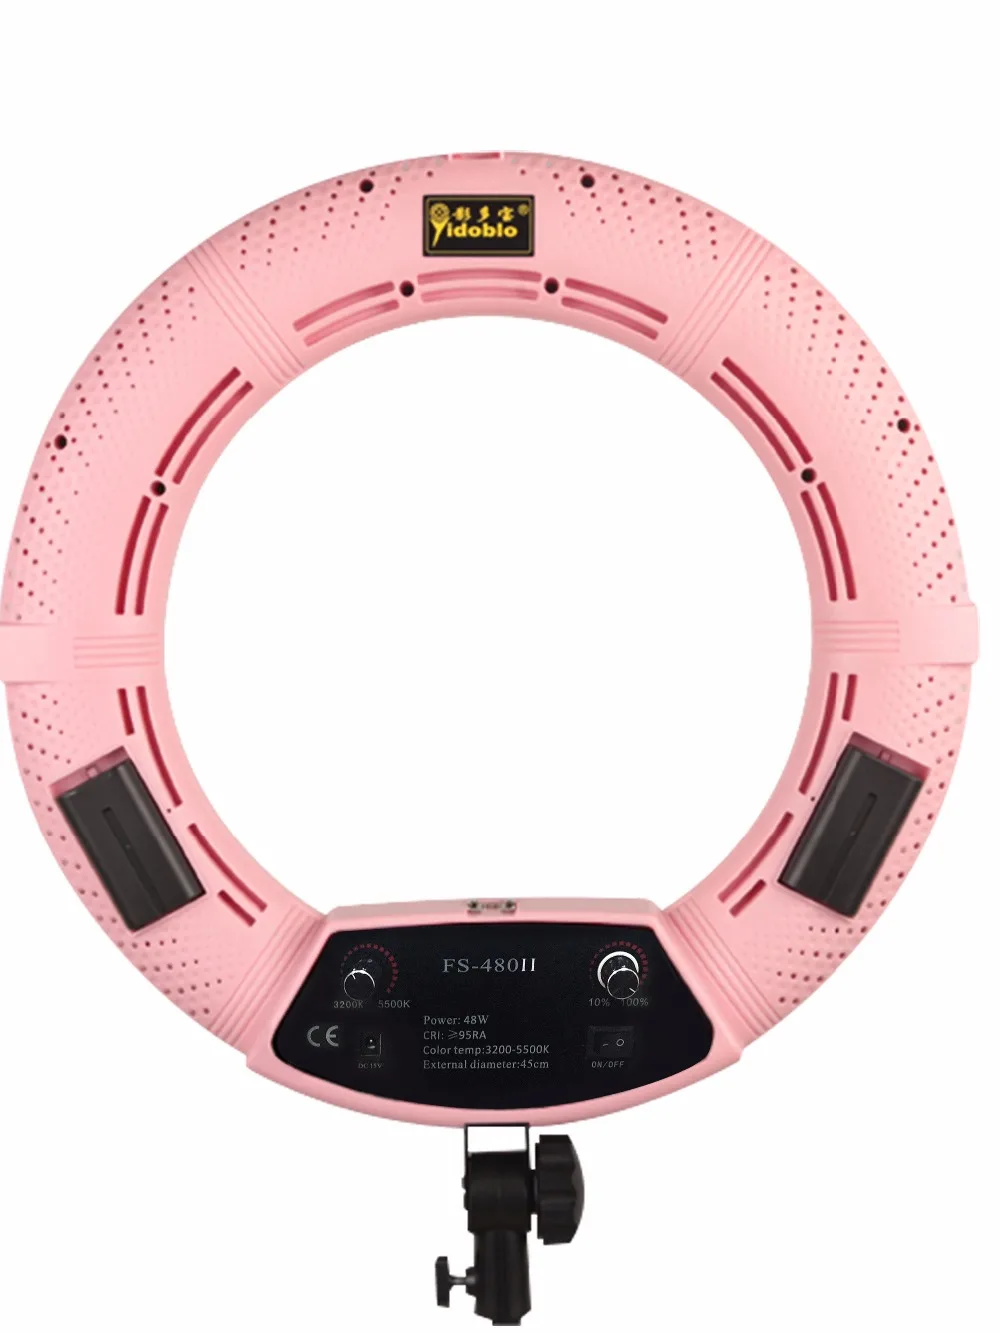 Yidoblo розовый FS-480II фото/Студия 1" 480 светодиодный кольцевой светильник 5600K с регулируемой яркостью кольцевой светильник для камеры+ сумка